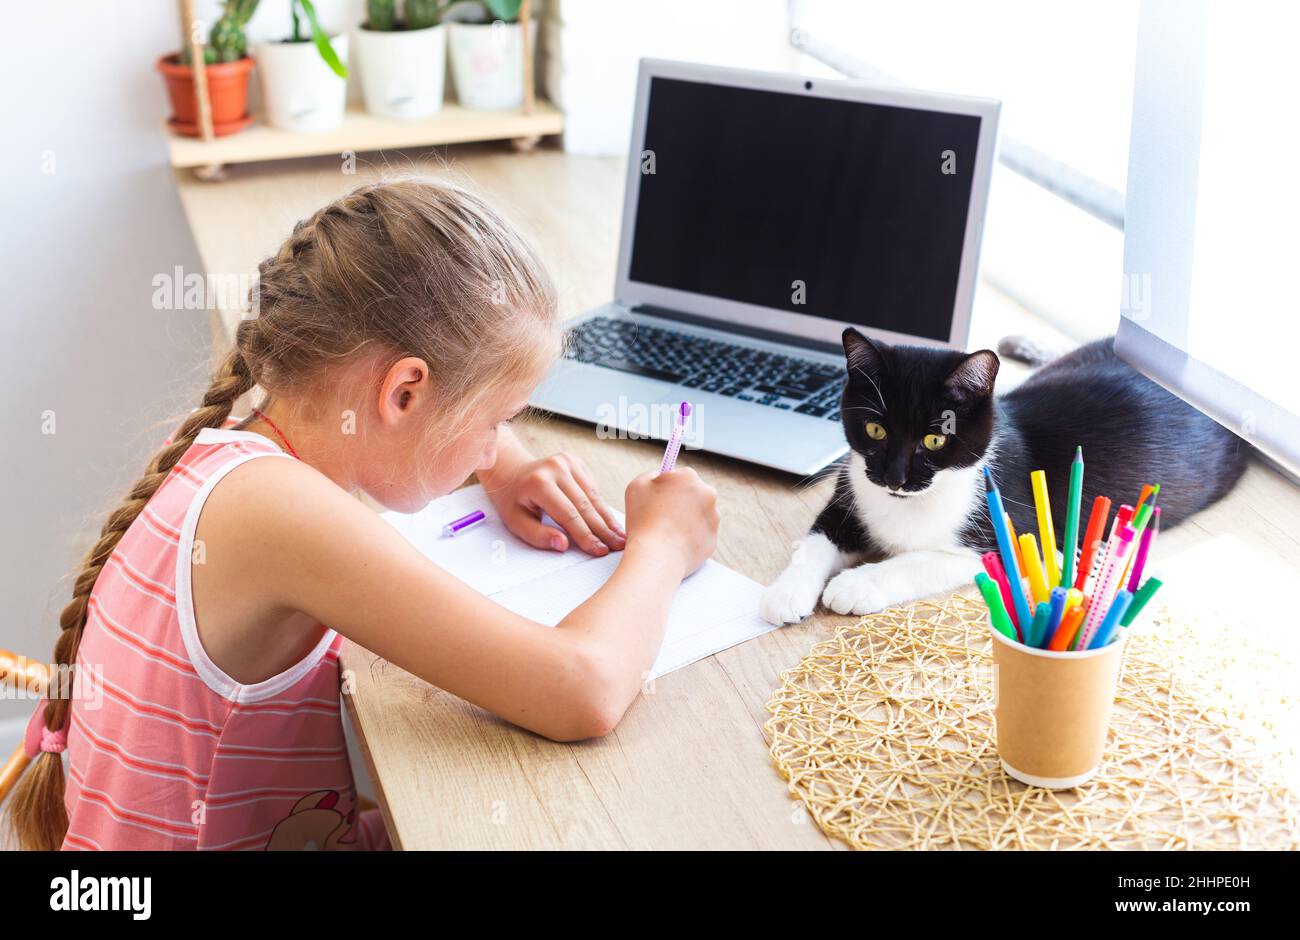 Caucasien mignonne fille d'école faisant des devoirs à la maison, écrivant ou dessin dans le bloc-notes, à côté de l'ordinateur portable, noir et blanc chat couché à proximité.Espace de travail confortable Banque D'Images